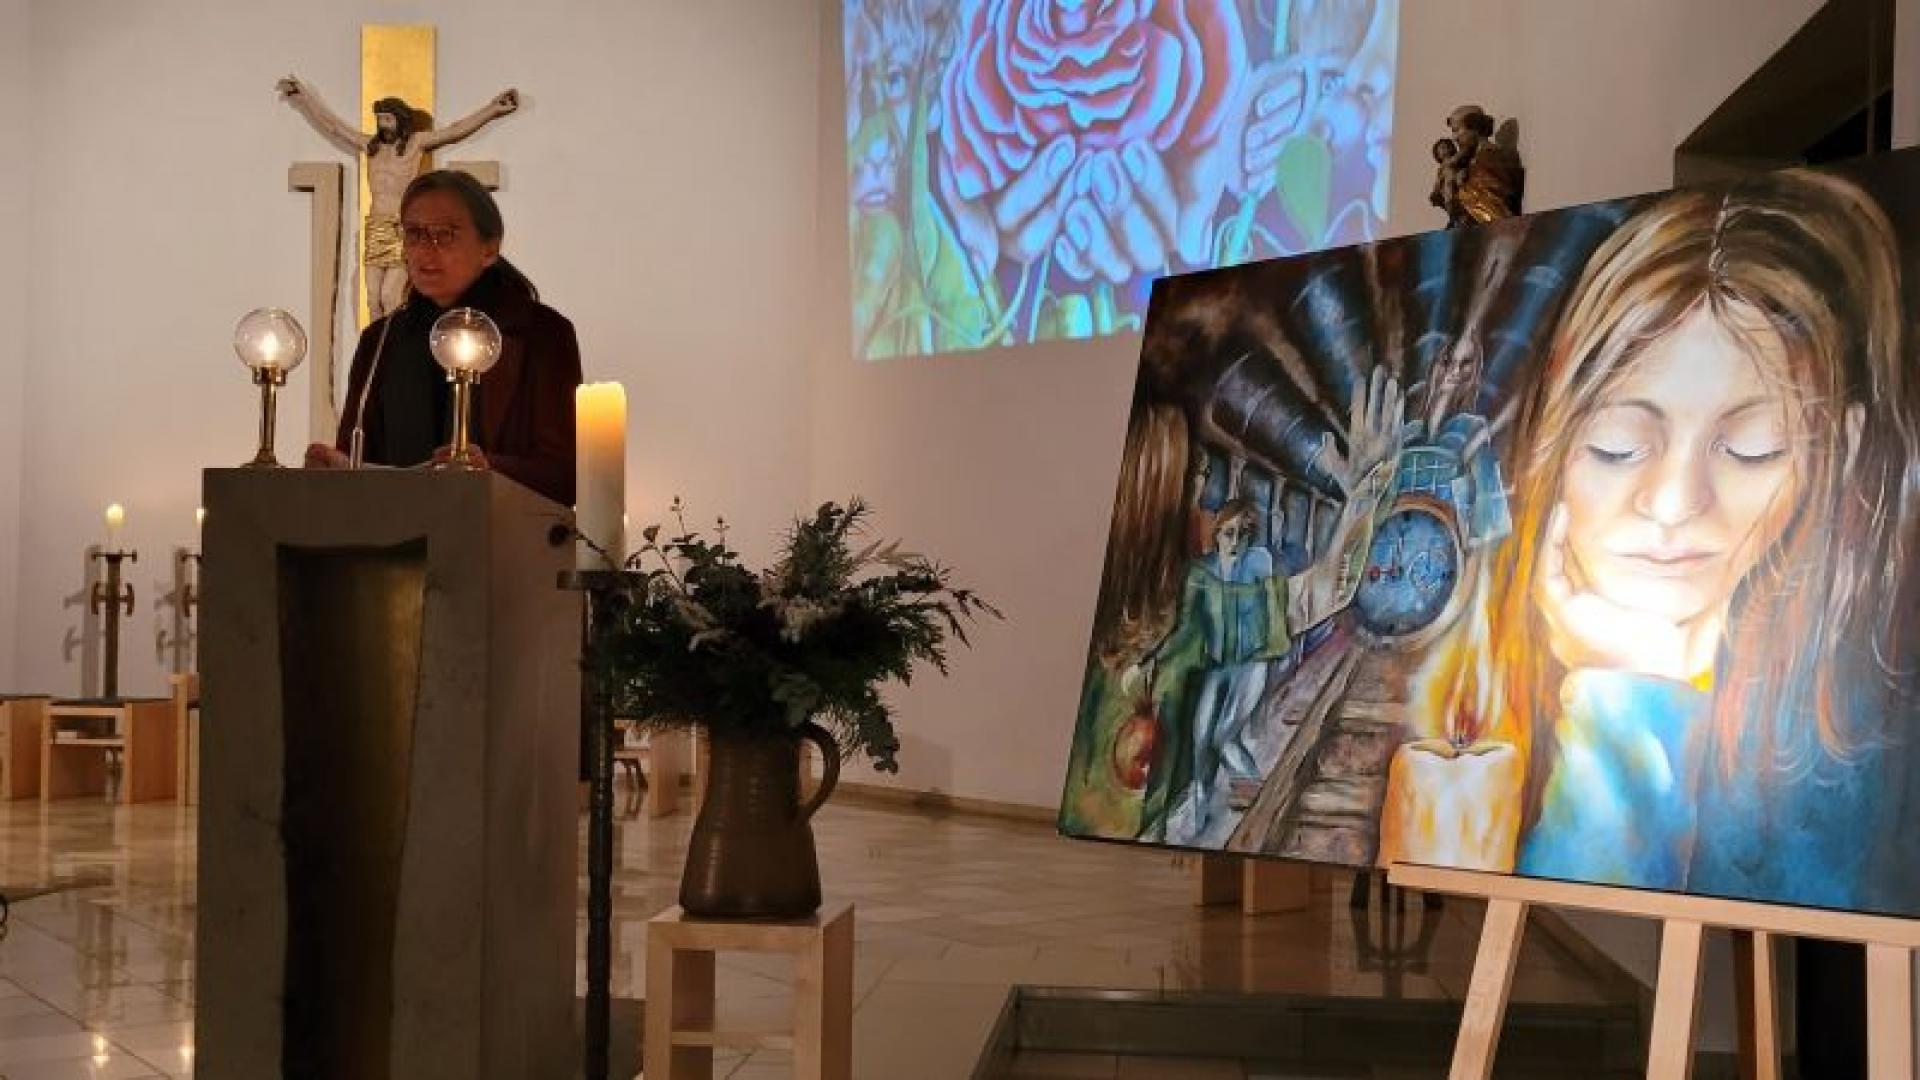 Eine Frau steht in einer Kirche am Ambo, neben ihr ein Kunstwerk.